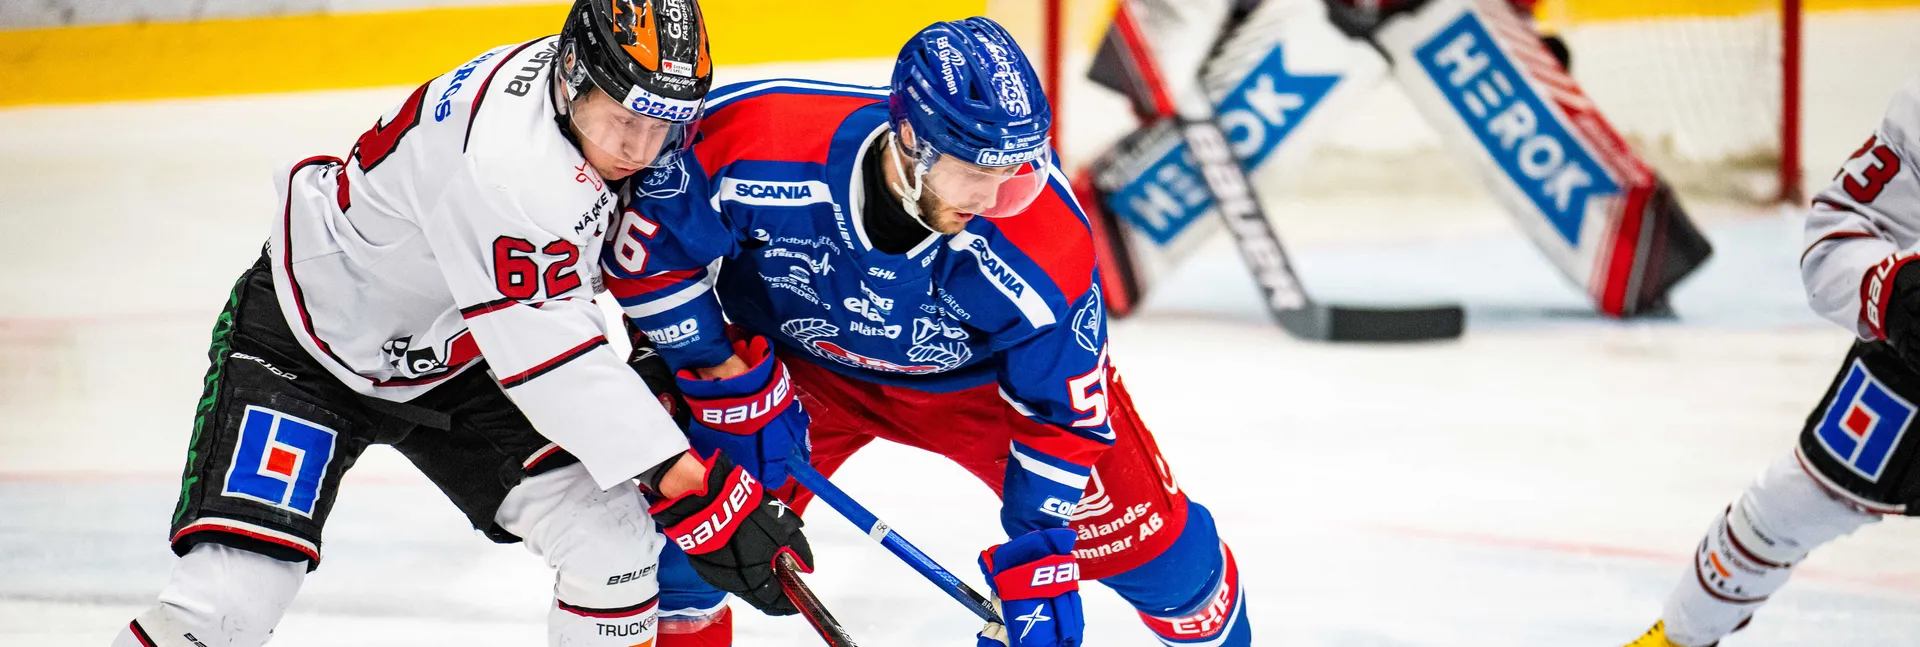 Ishockeymatch mellan Oskarshamn och Örebro i SHL